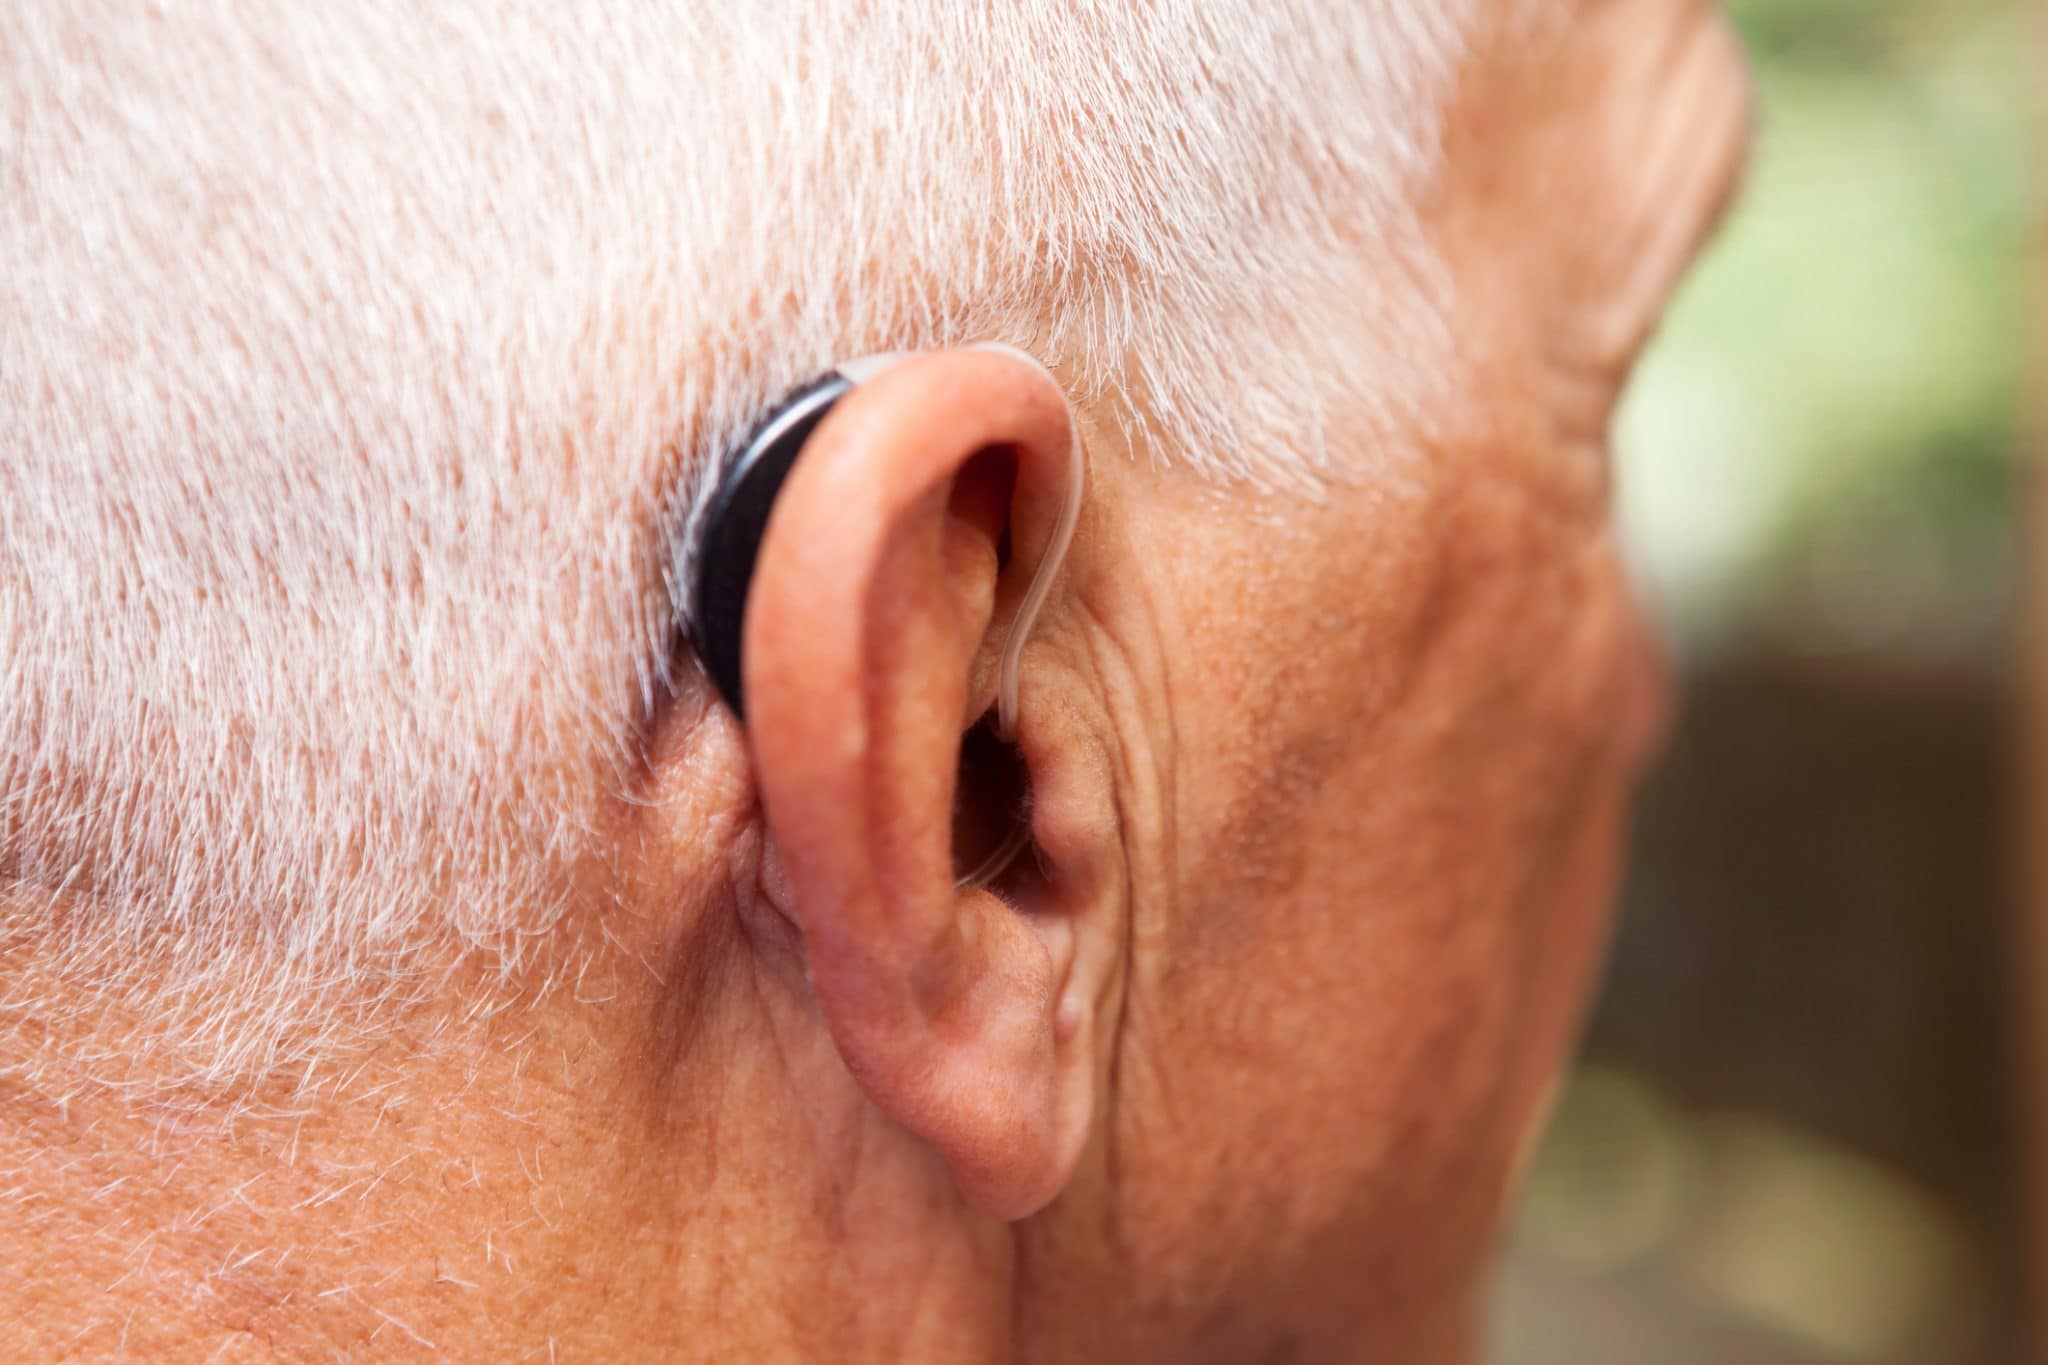 Ear hearing. Слуховой аппарат. Аппараты для слуха для пожилых. Старик со слуховым аппаратом. Заушный слуховой аппарат.